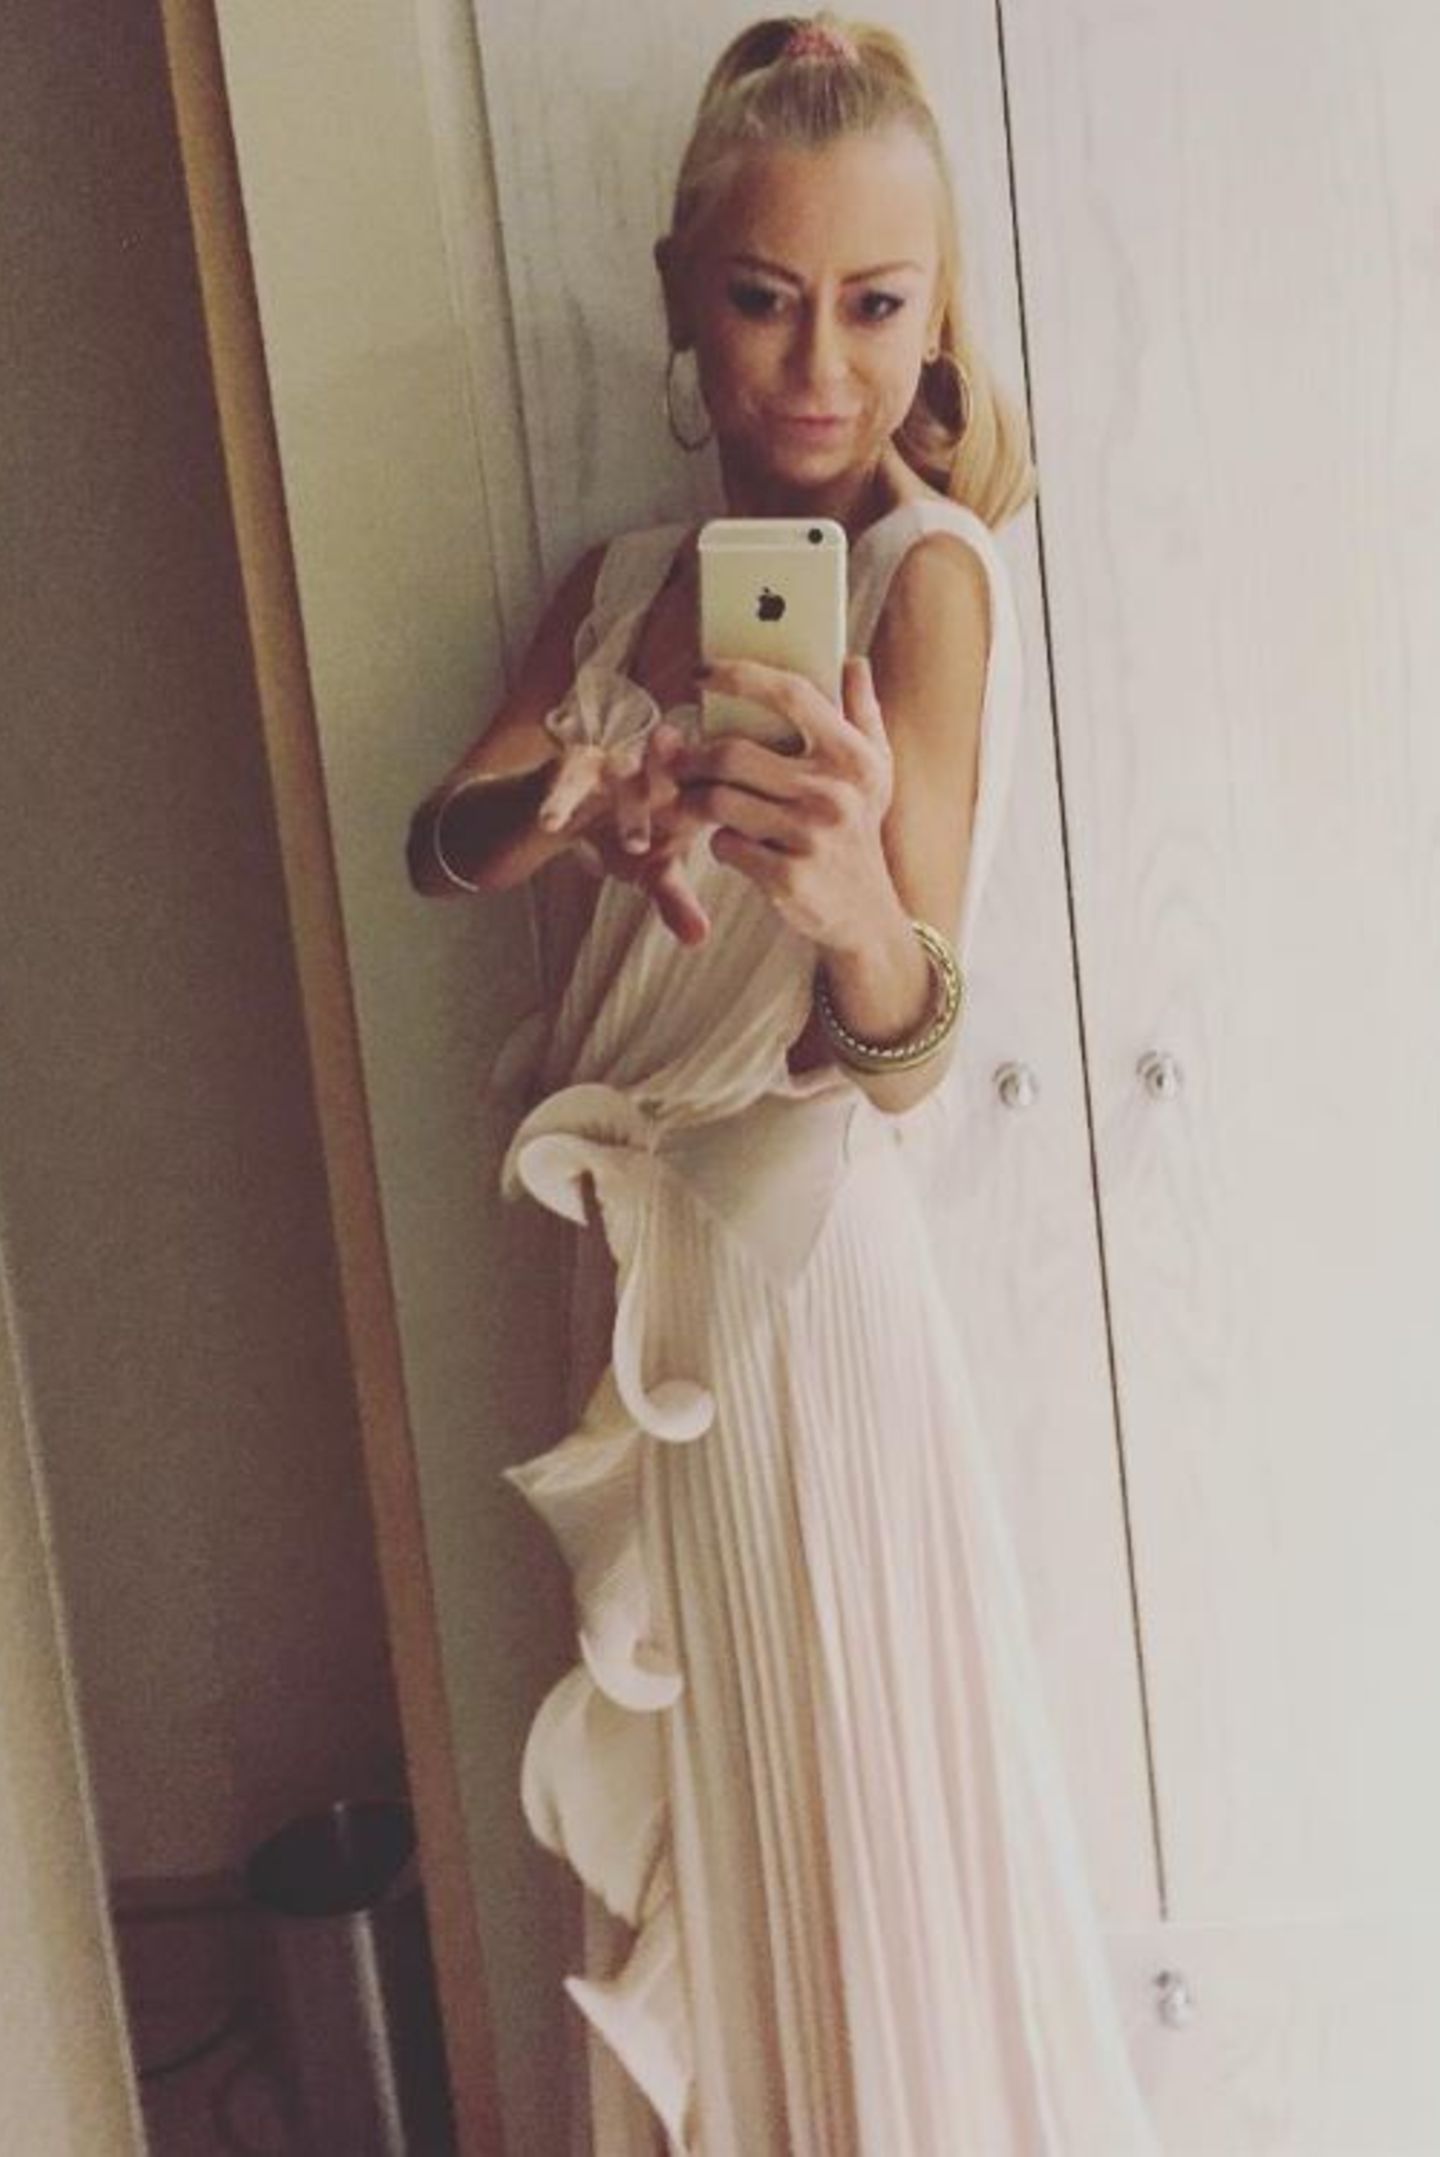 Auf ihrem Instagram-Account postet Jenny Elvers ebenfalls ihr Outfit. Die Reaktionen der Fans sind eindeutig: "Du bist ganz offensichtlich zu mager. Take care of yourself!"